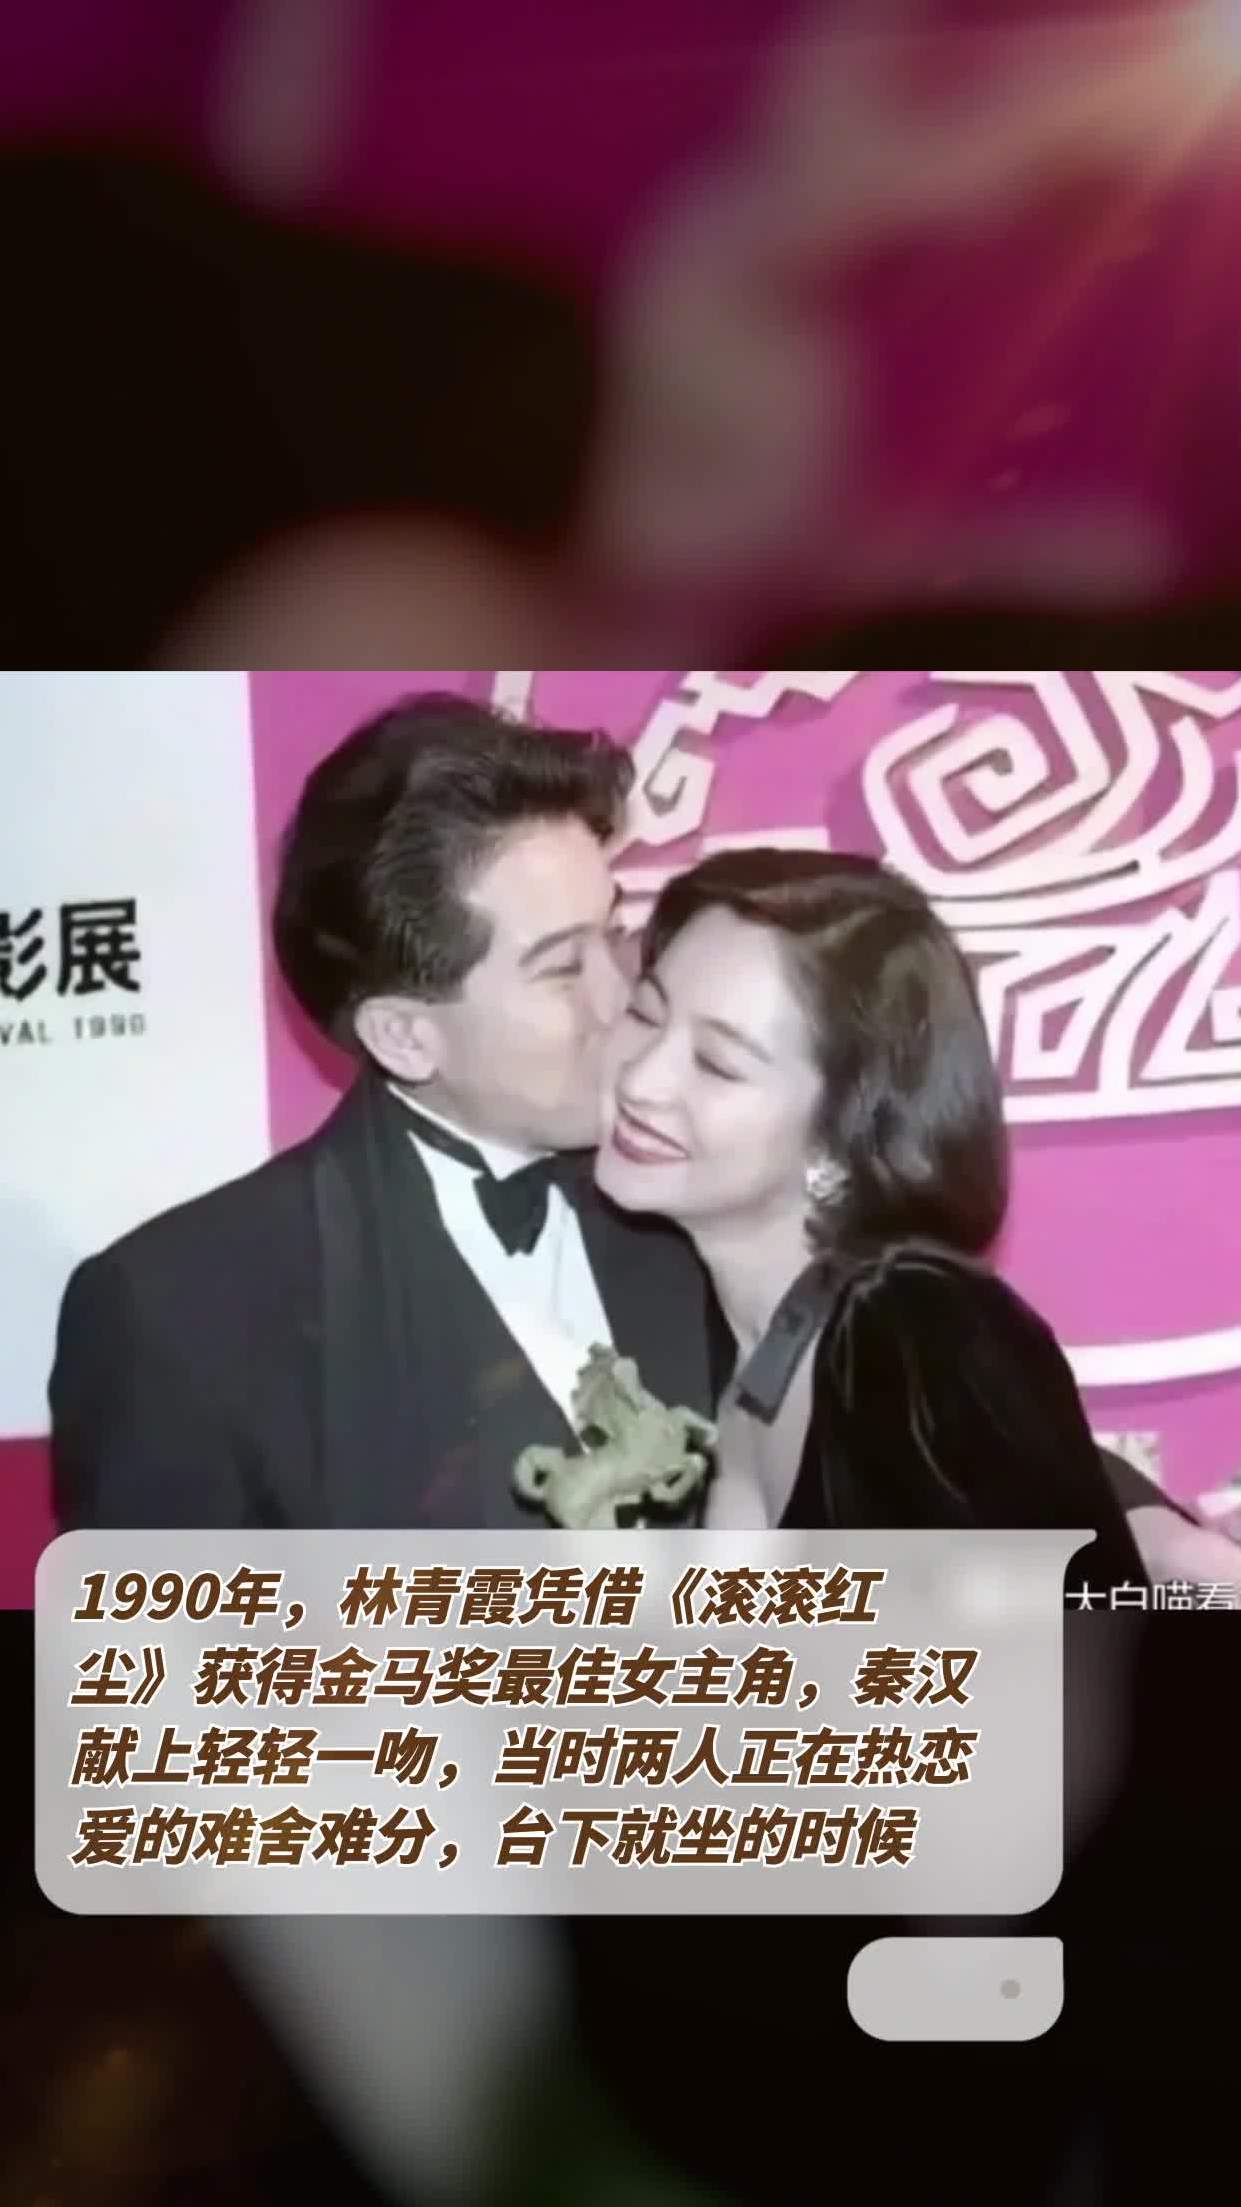 1990年,林青霞凭借《滚滚红尘》获得金马奖最佳女主角,秦汉献上轻轻